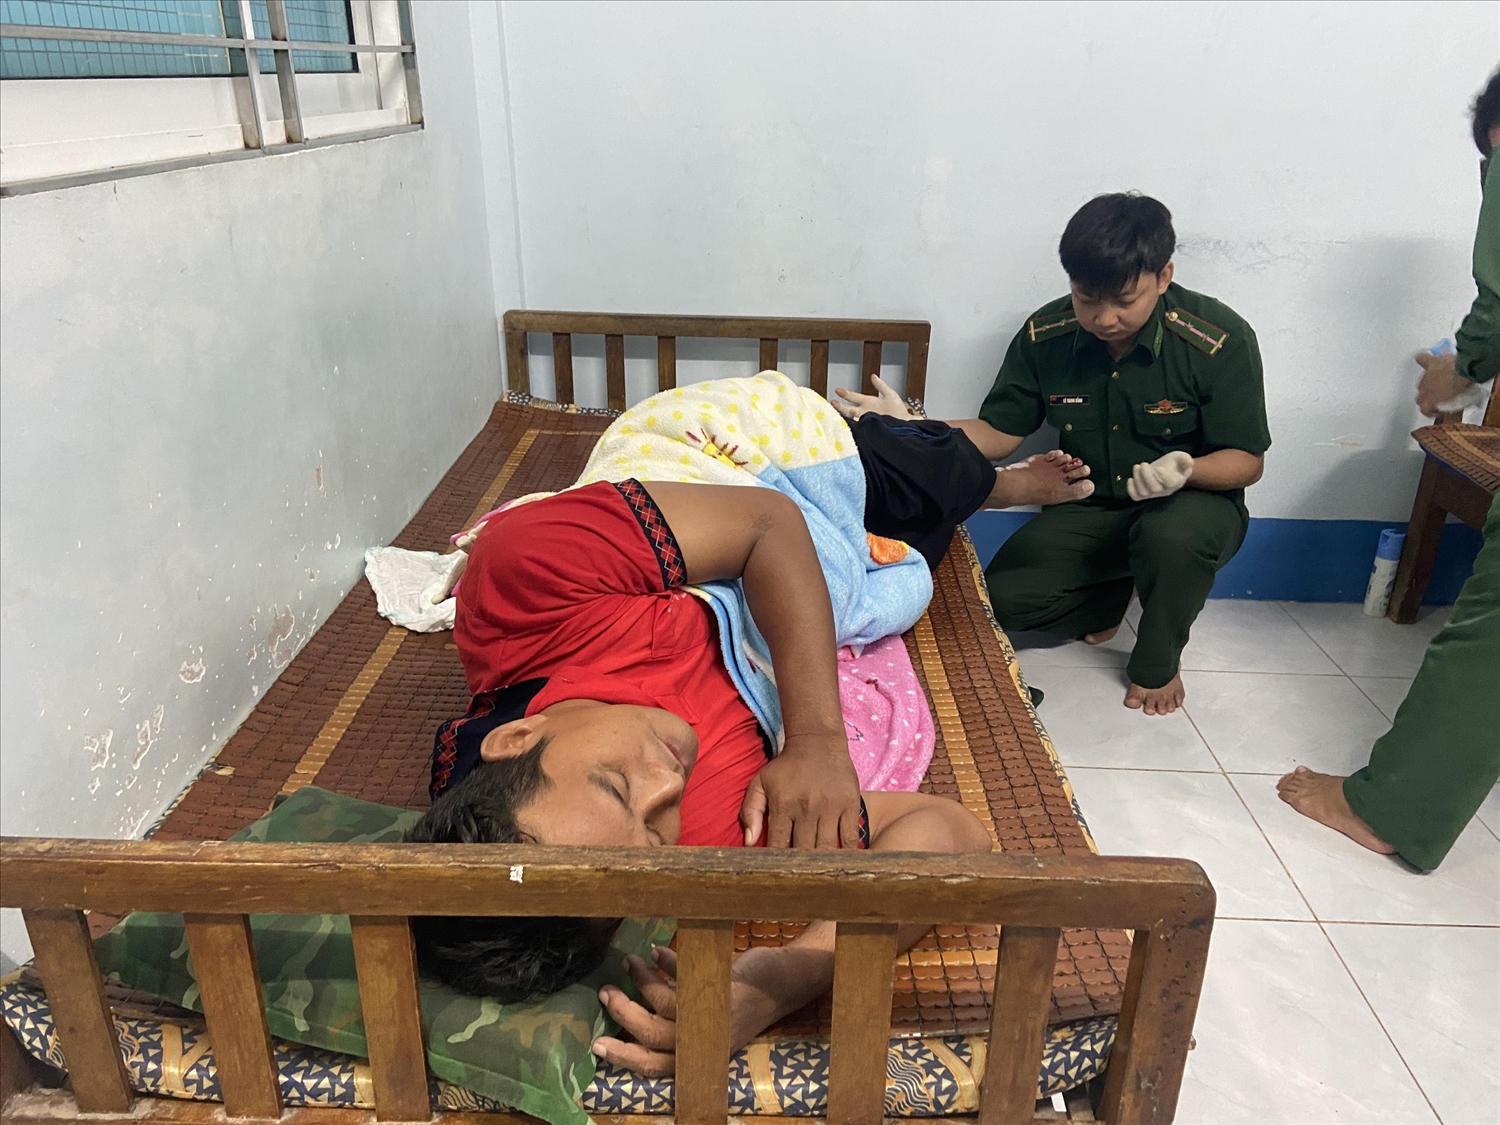 Cán bộ chiến sỹ BĐBP Cà Mau chữa trị vết thương cho ngư dân bị thương.